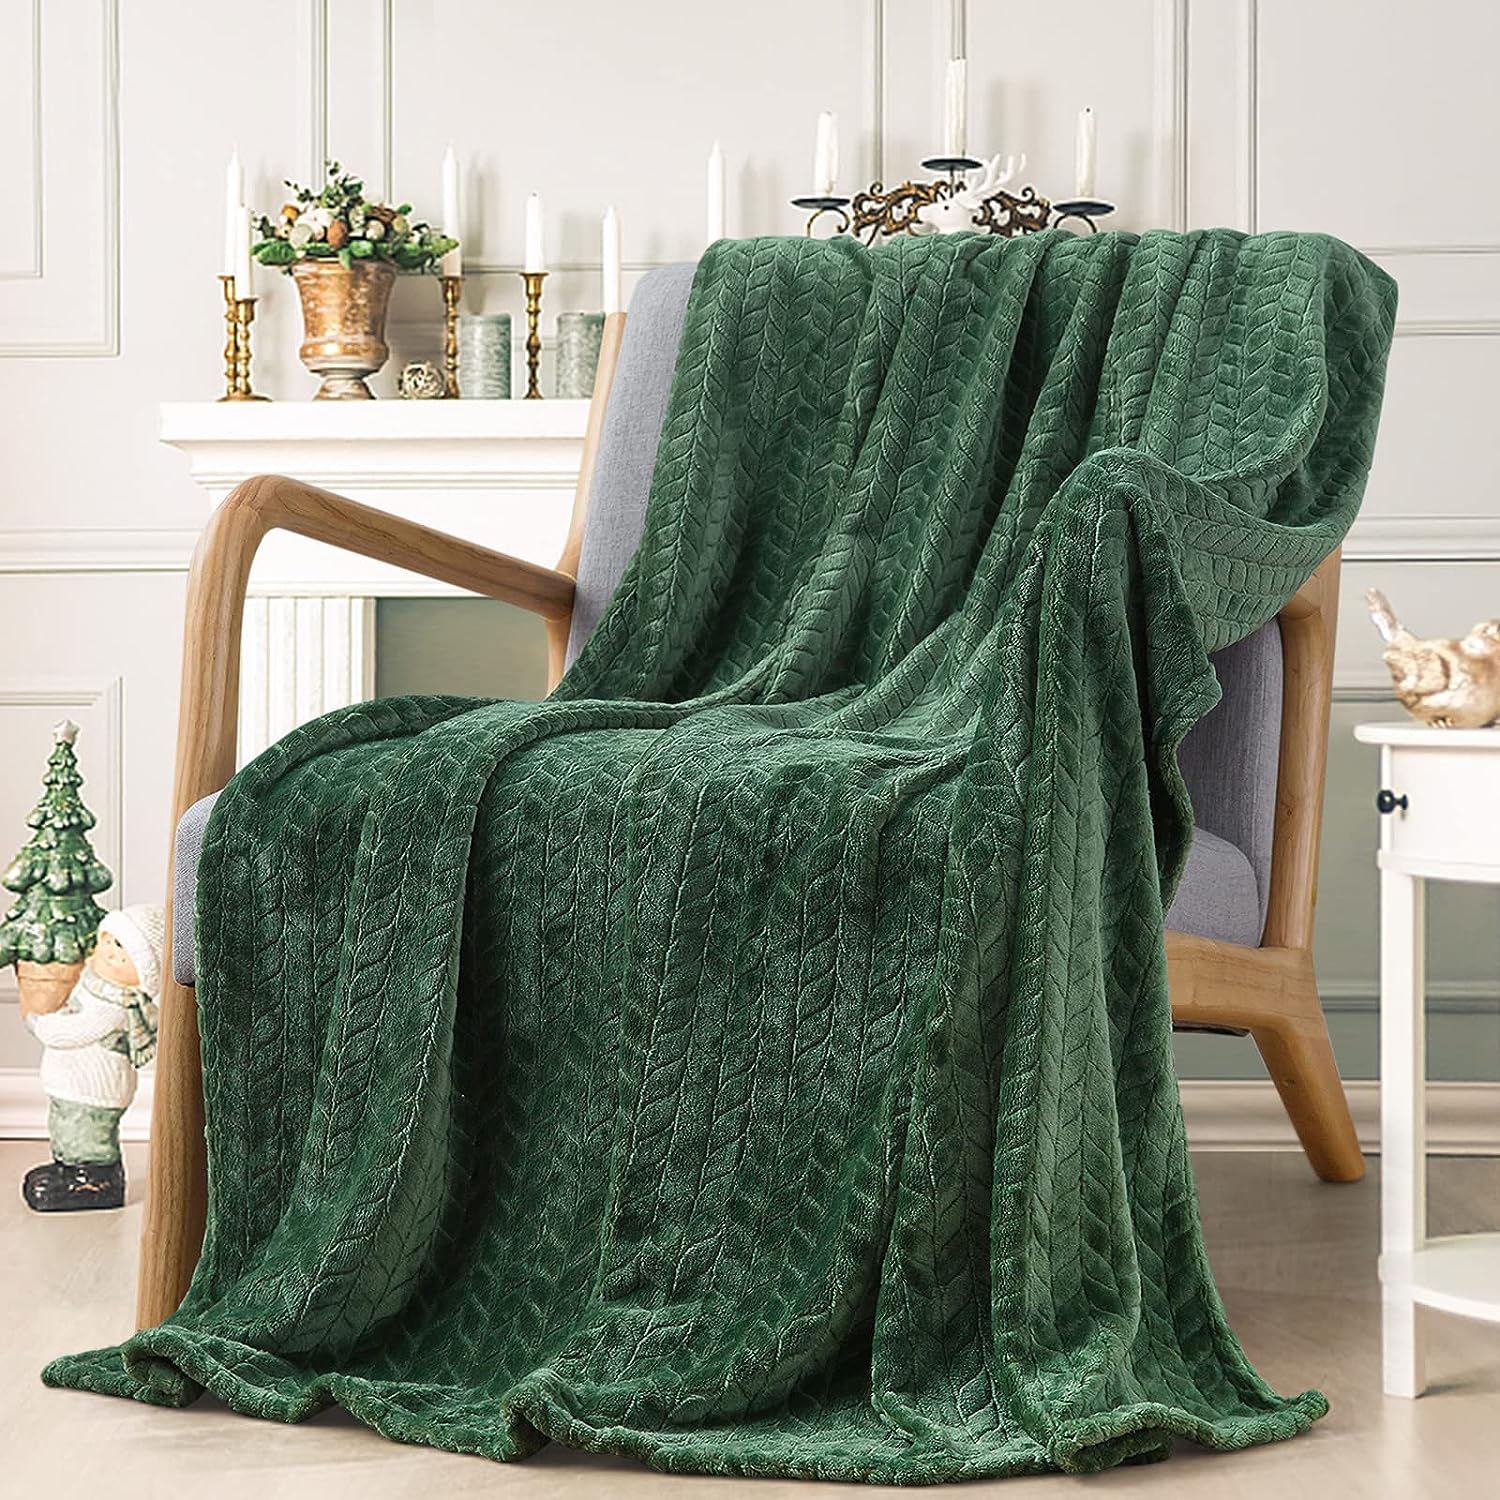  DorothyCGarza Manta de franela de forro polar, ultra suave,  cálida y acogedora, manta de cama ligera para sofá en invierno (tres  tamaños de 50 x 40, 60 x 50, 80 x